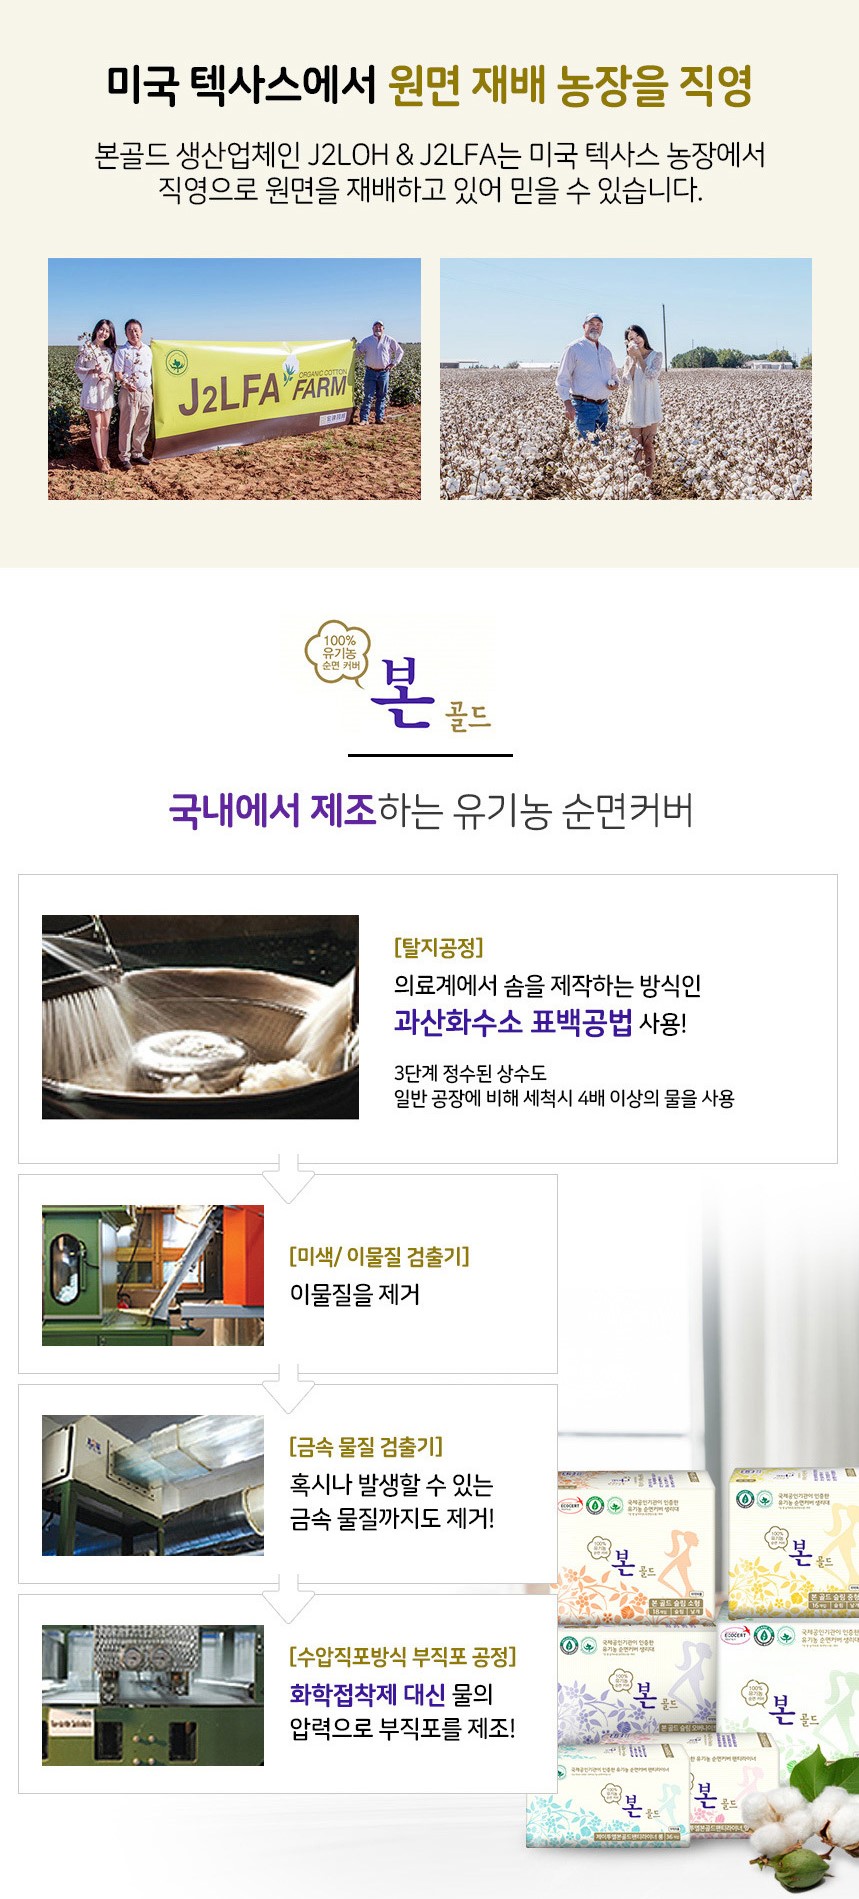 韓國食品-[Organic Bon] Gold Organic Cotton Sanitary Napkin [Large 280mm] (14pcs)